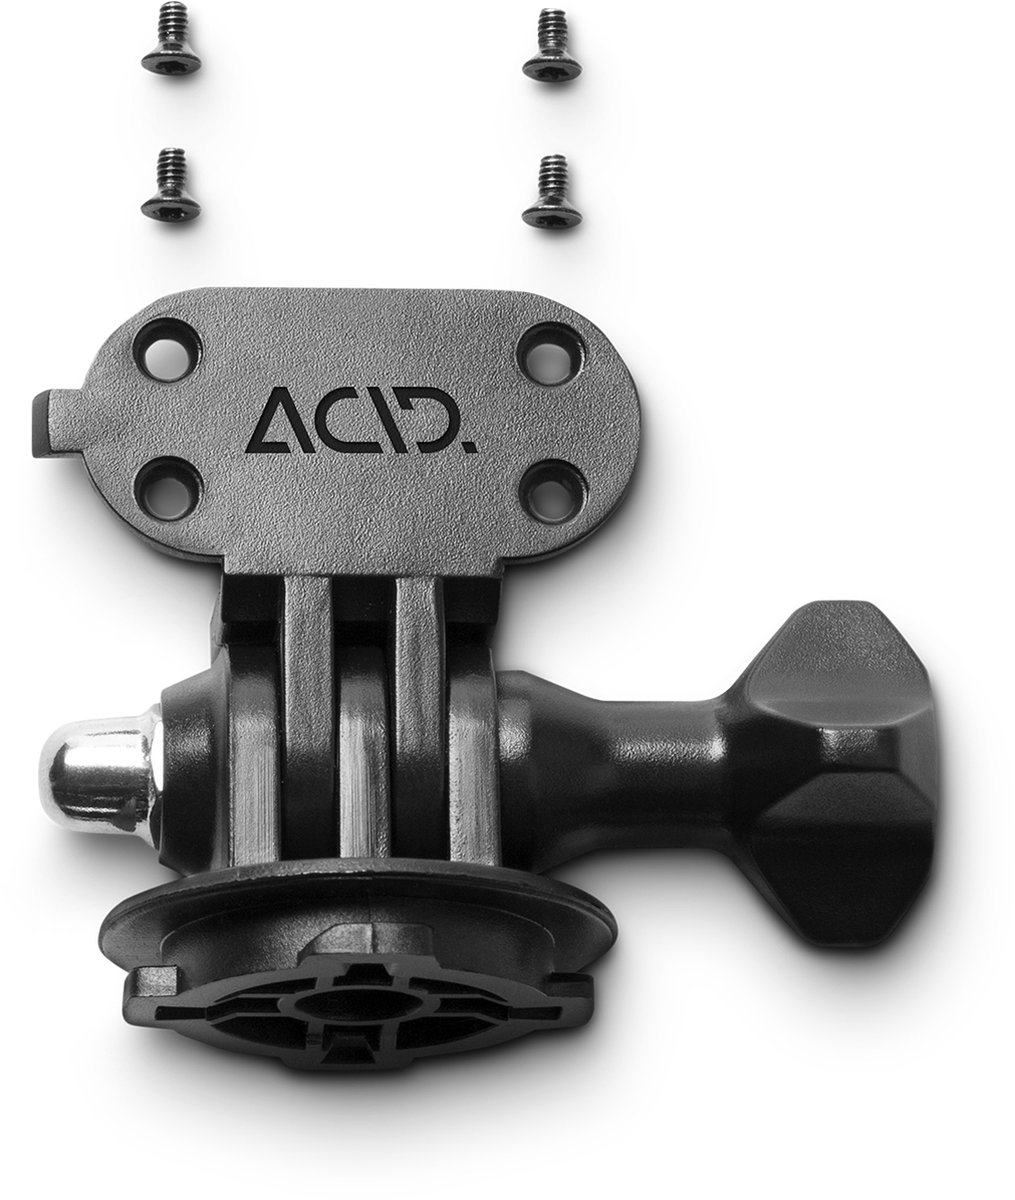 ACID HPA 2000 Montageadapter met achterplaat - Montageadapter - Eenvoudig te bevestigen - Inclusief schroeven - Zwart